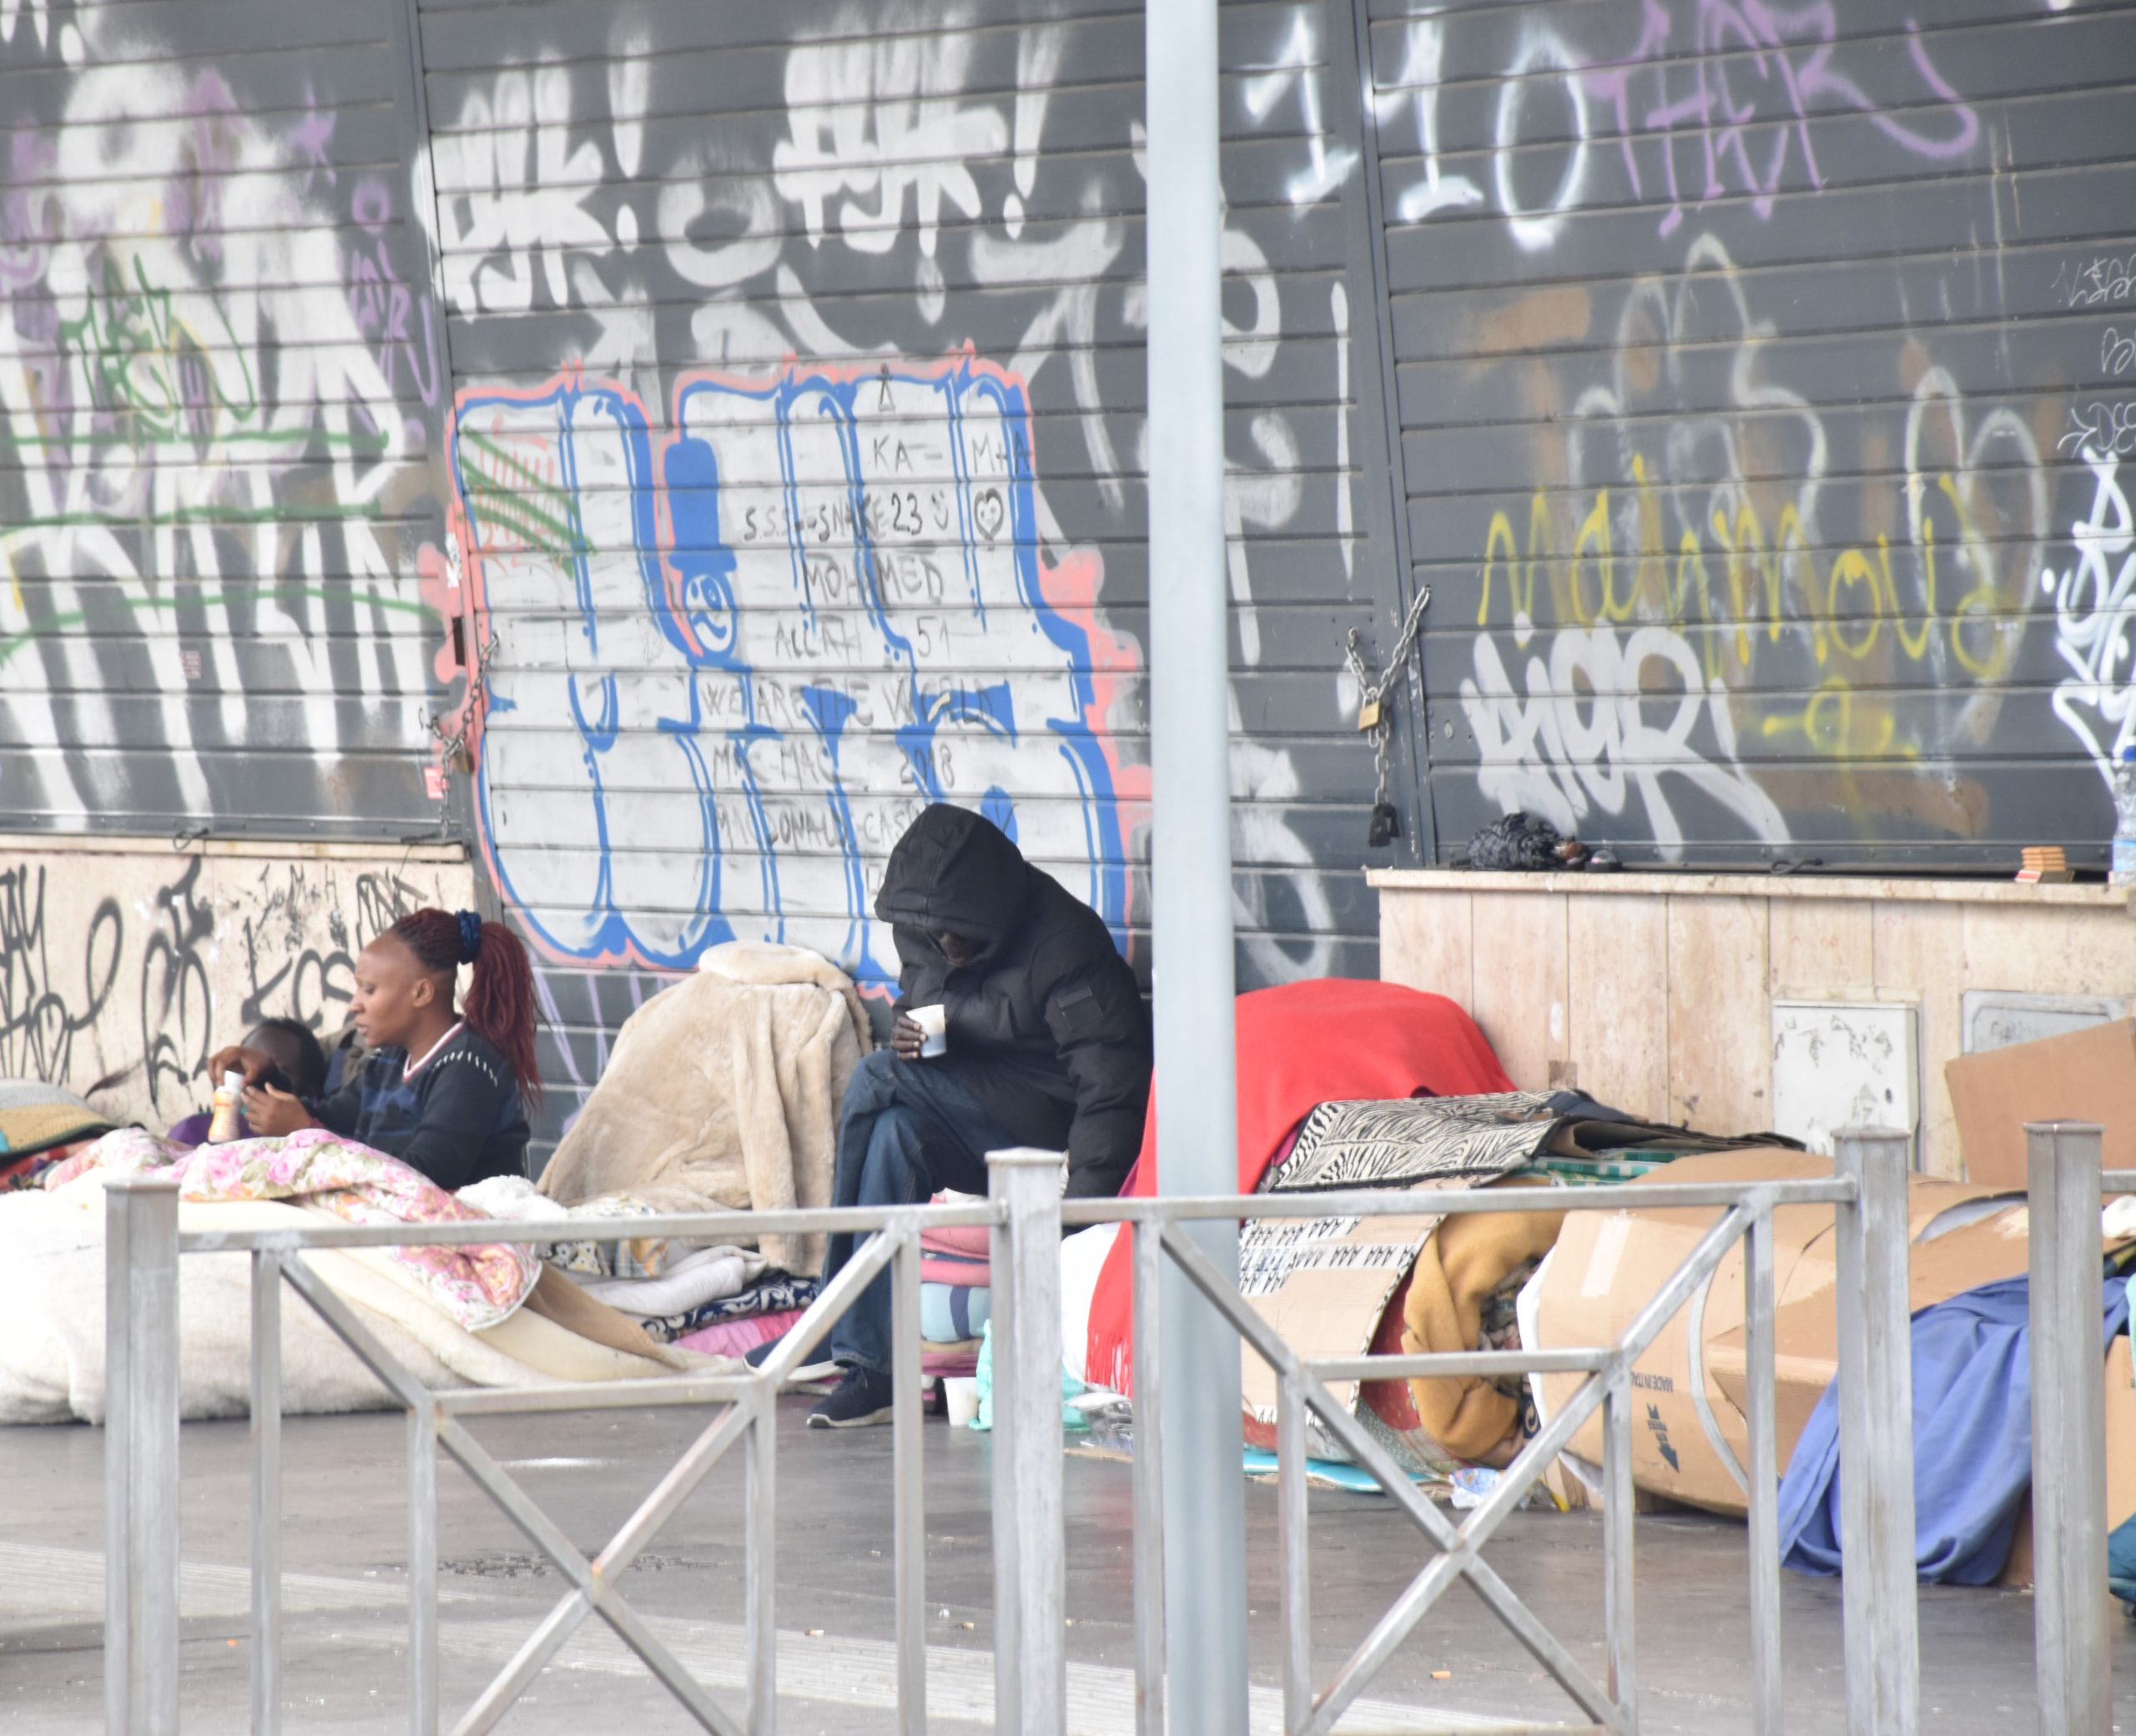 Alcuni senzatetto cercano di ripararsi dal freddo